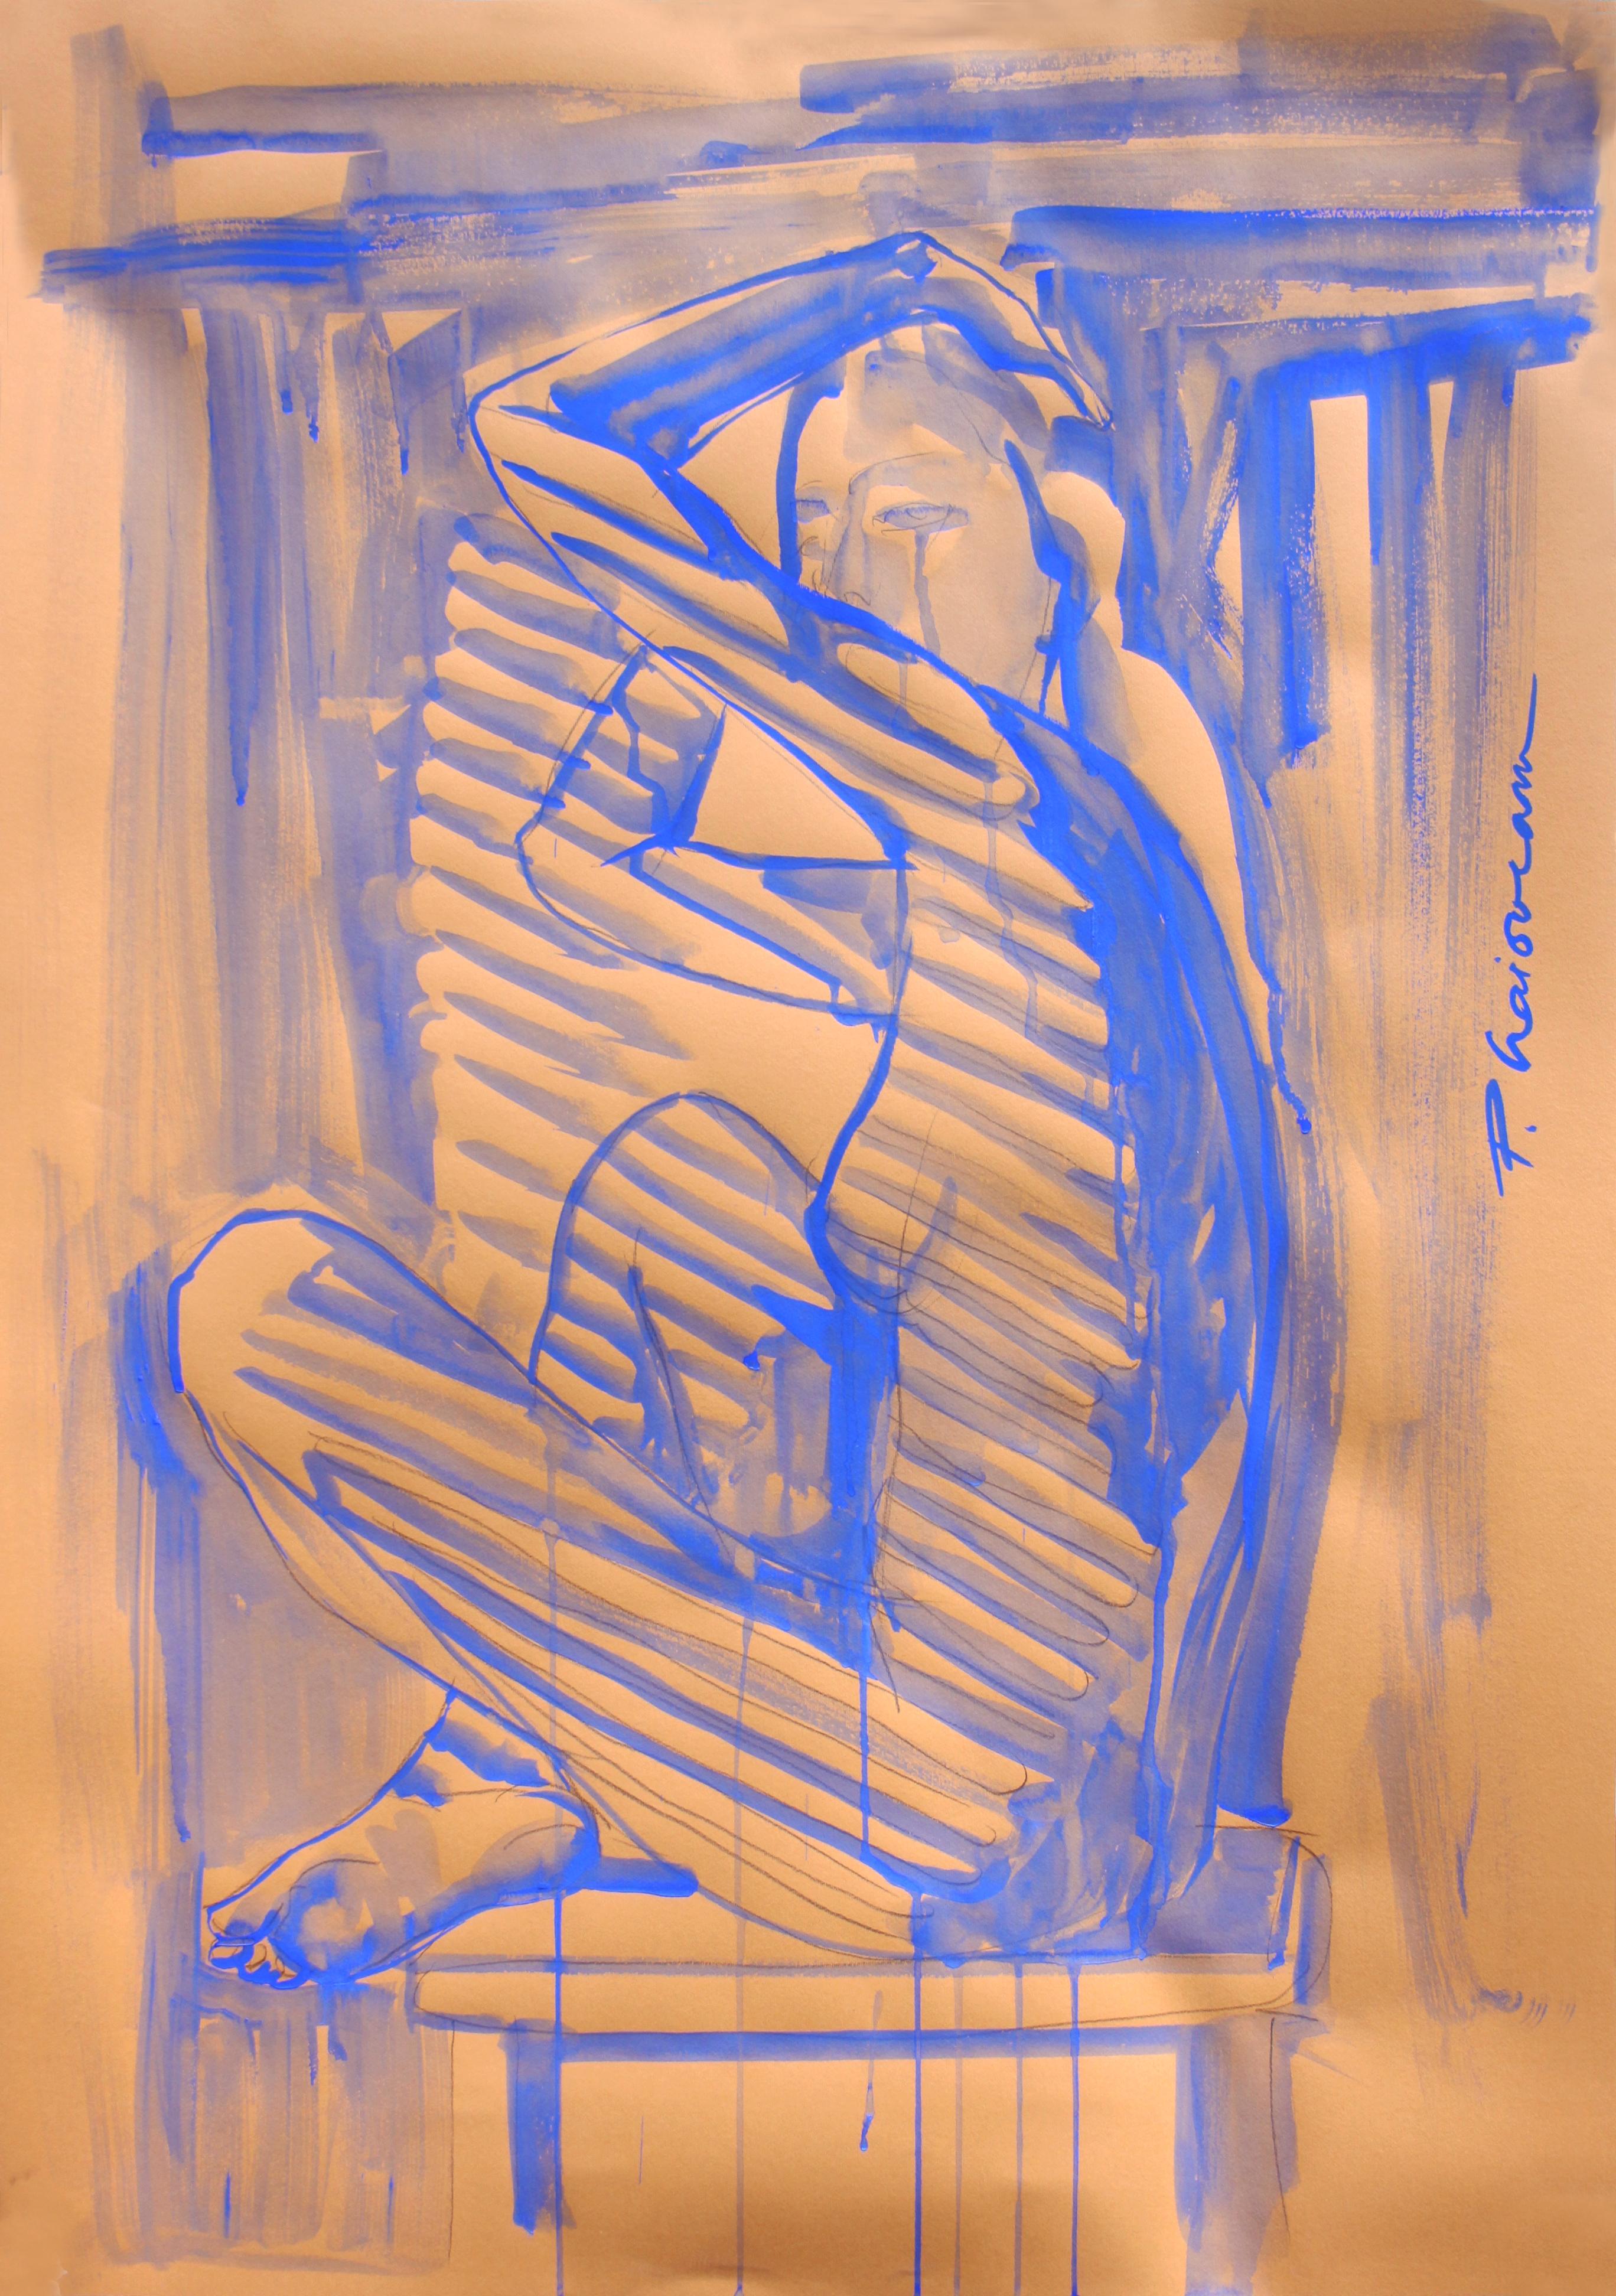 "Sensory Experience", Bleistift und ultramarinblaue Tempera auf Papier, inspiriert von Matisse.
Teil der Serie Nude in Interior.
Große Zeichnung. Wird in einer Rolle aus Florida, USA, geliefert.

Künstlerisches Statement
"Ich habe mit der